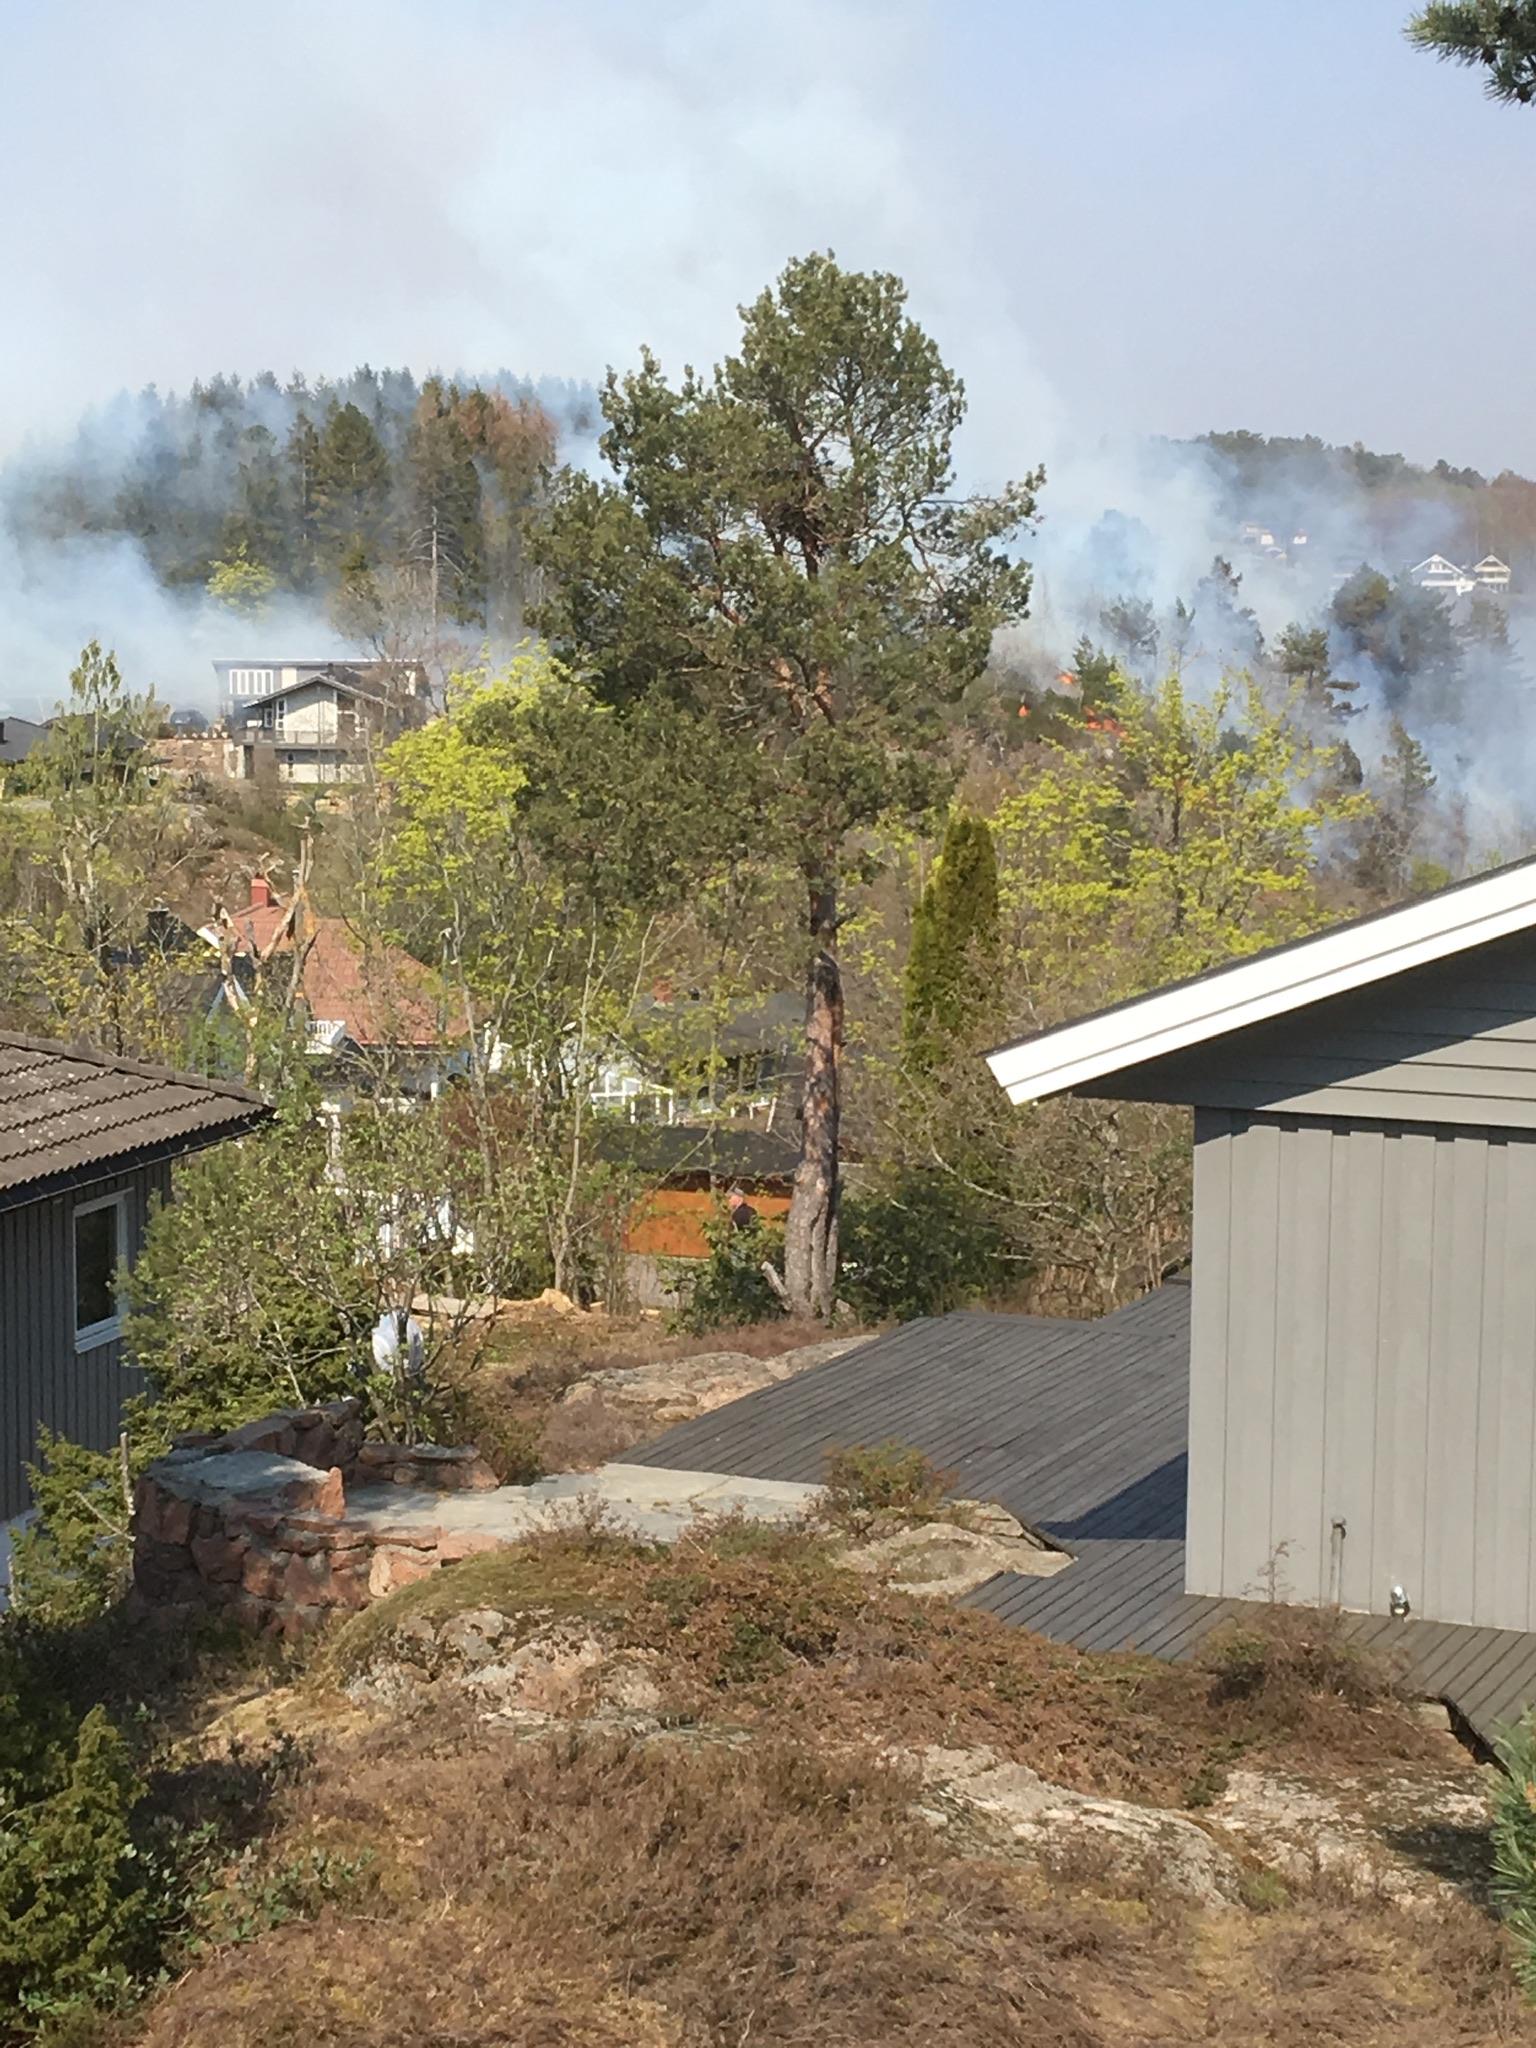 På Solnes i Melsomvik var flere bolighus truet. – Det er kraftig vind som blåser fra sjøen og inn over land slik at flammene sprer seg raskt, forteller Aftenpostens tipser, Brit Hom Lunde.